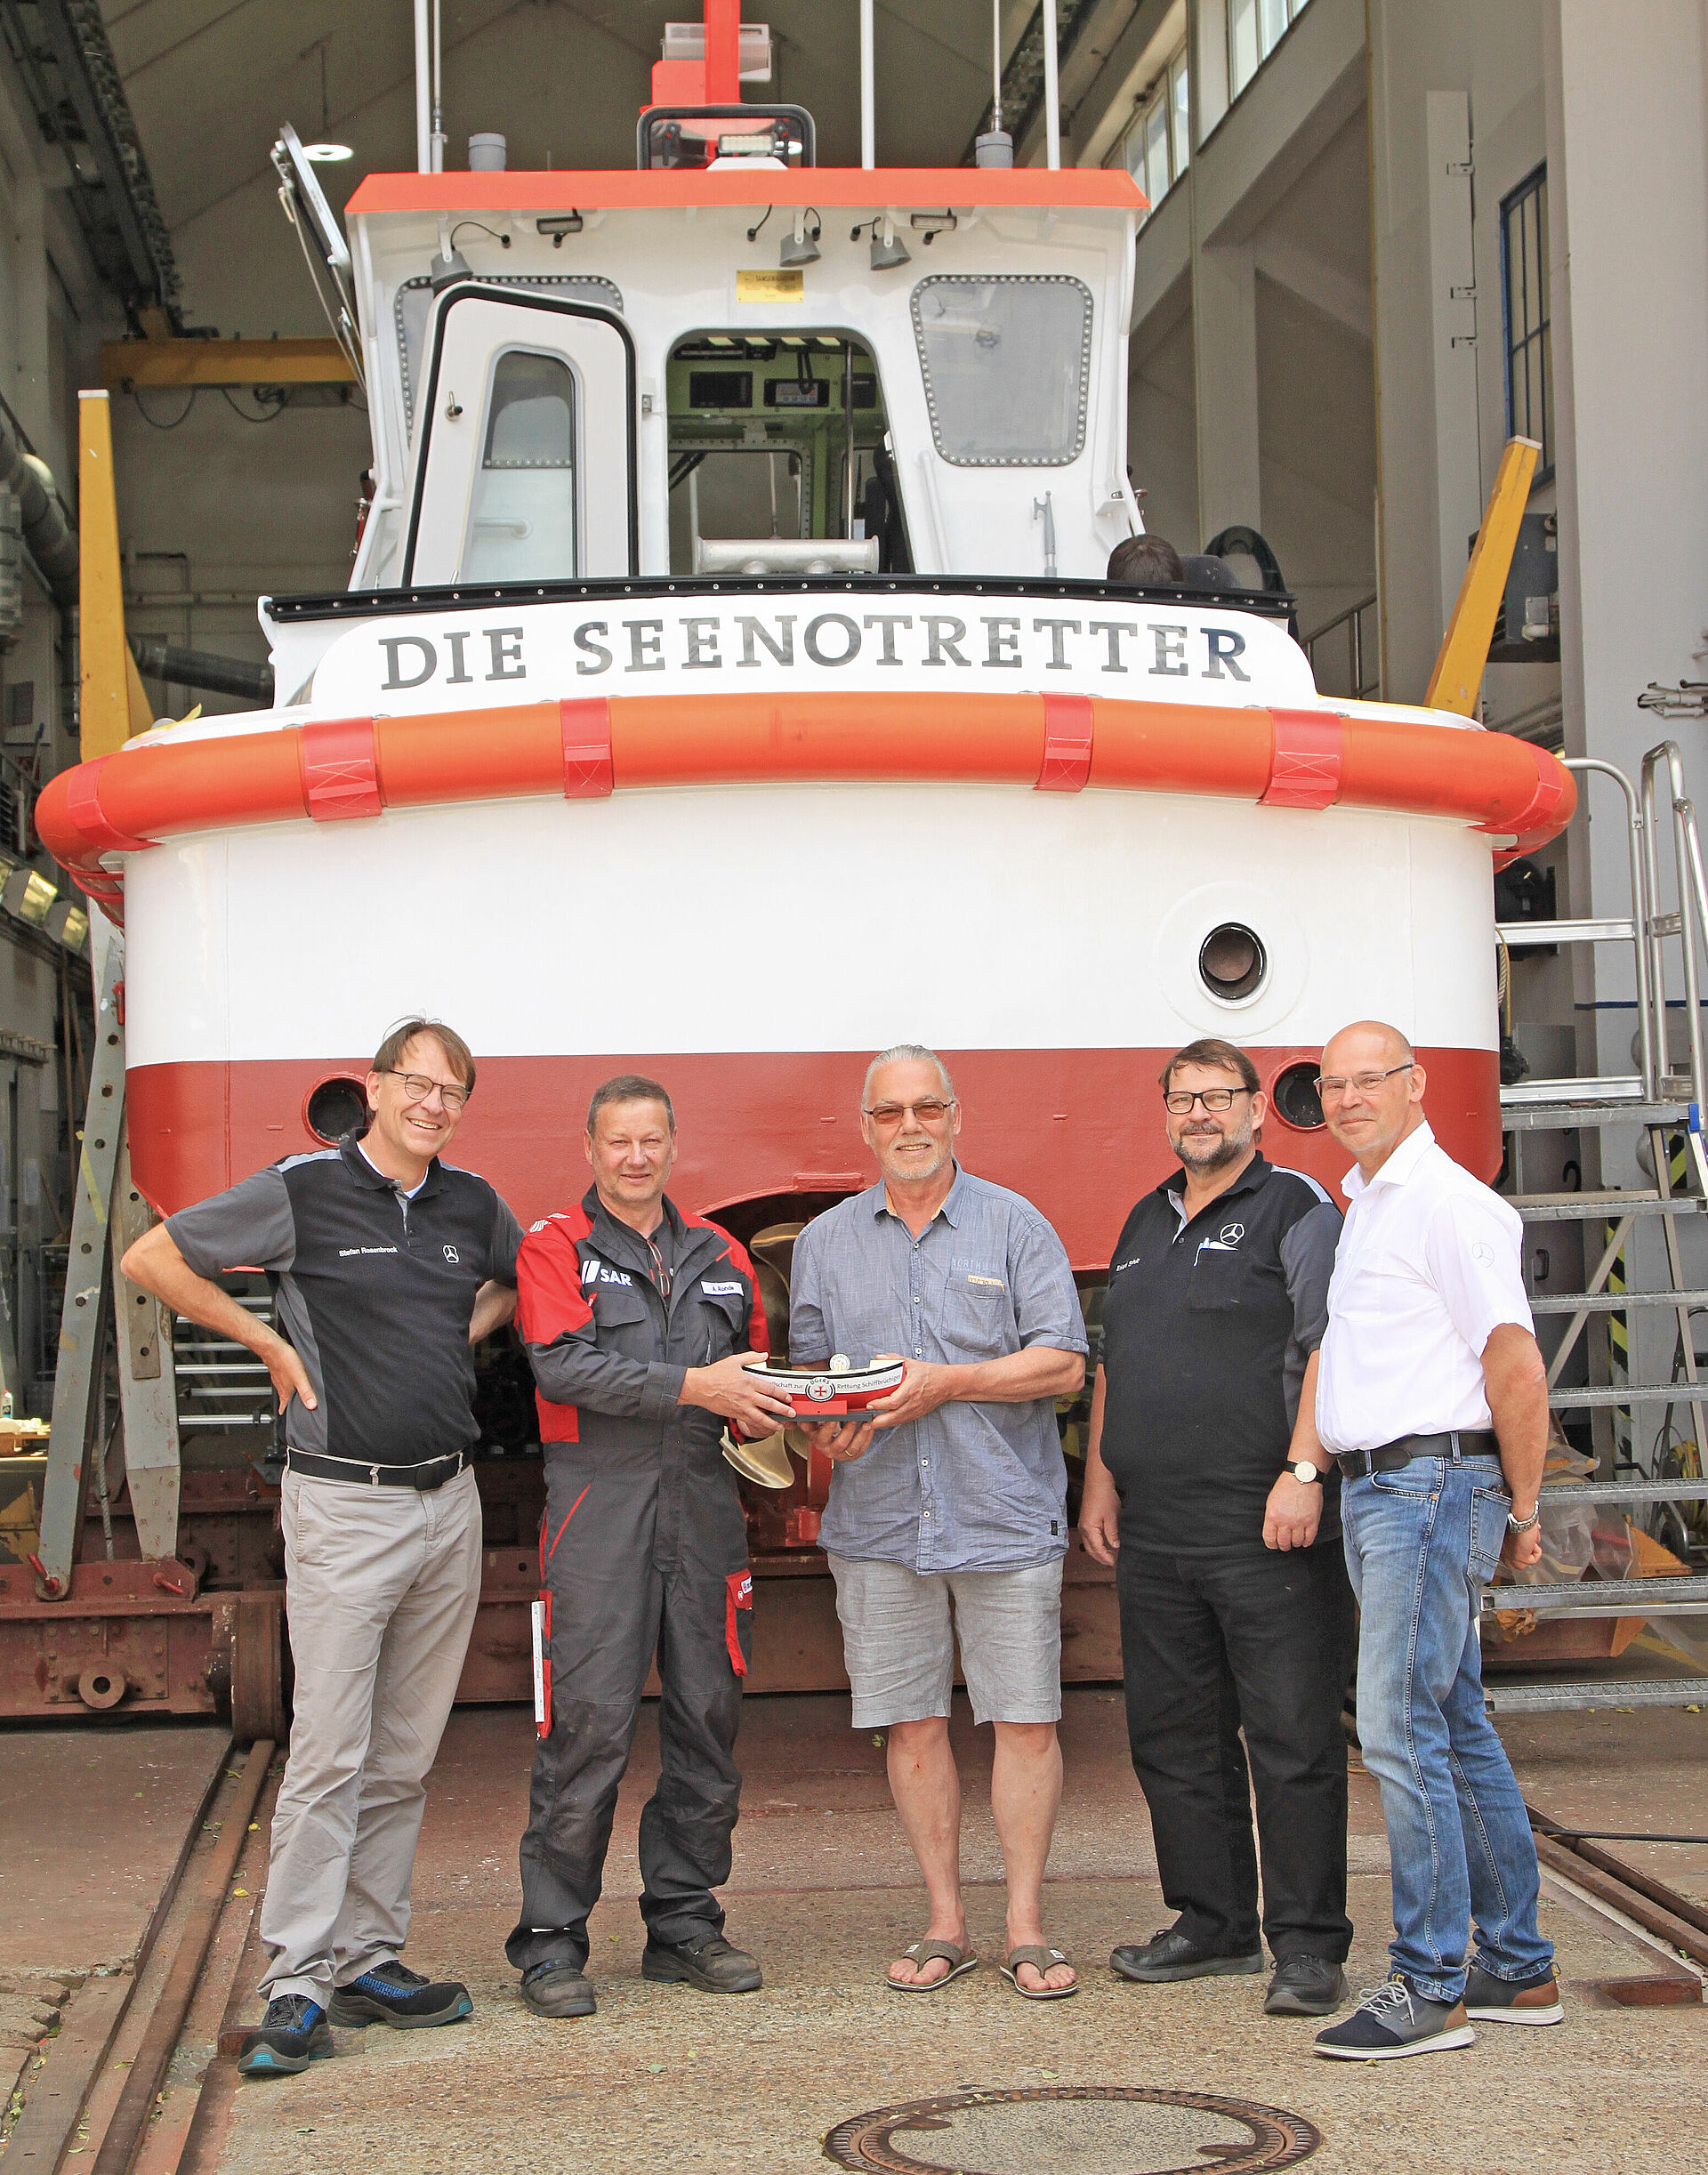 Fünf Männer stehen vor einer Werfthalle, in der ein Seenotrettungsboot zu sehen ist.